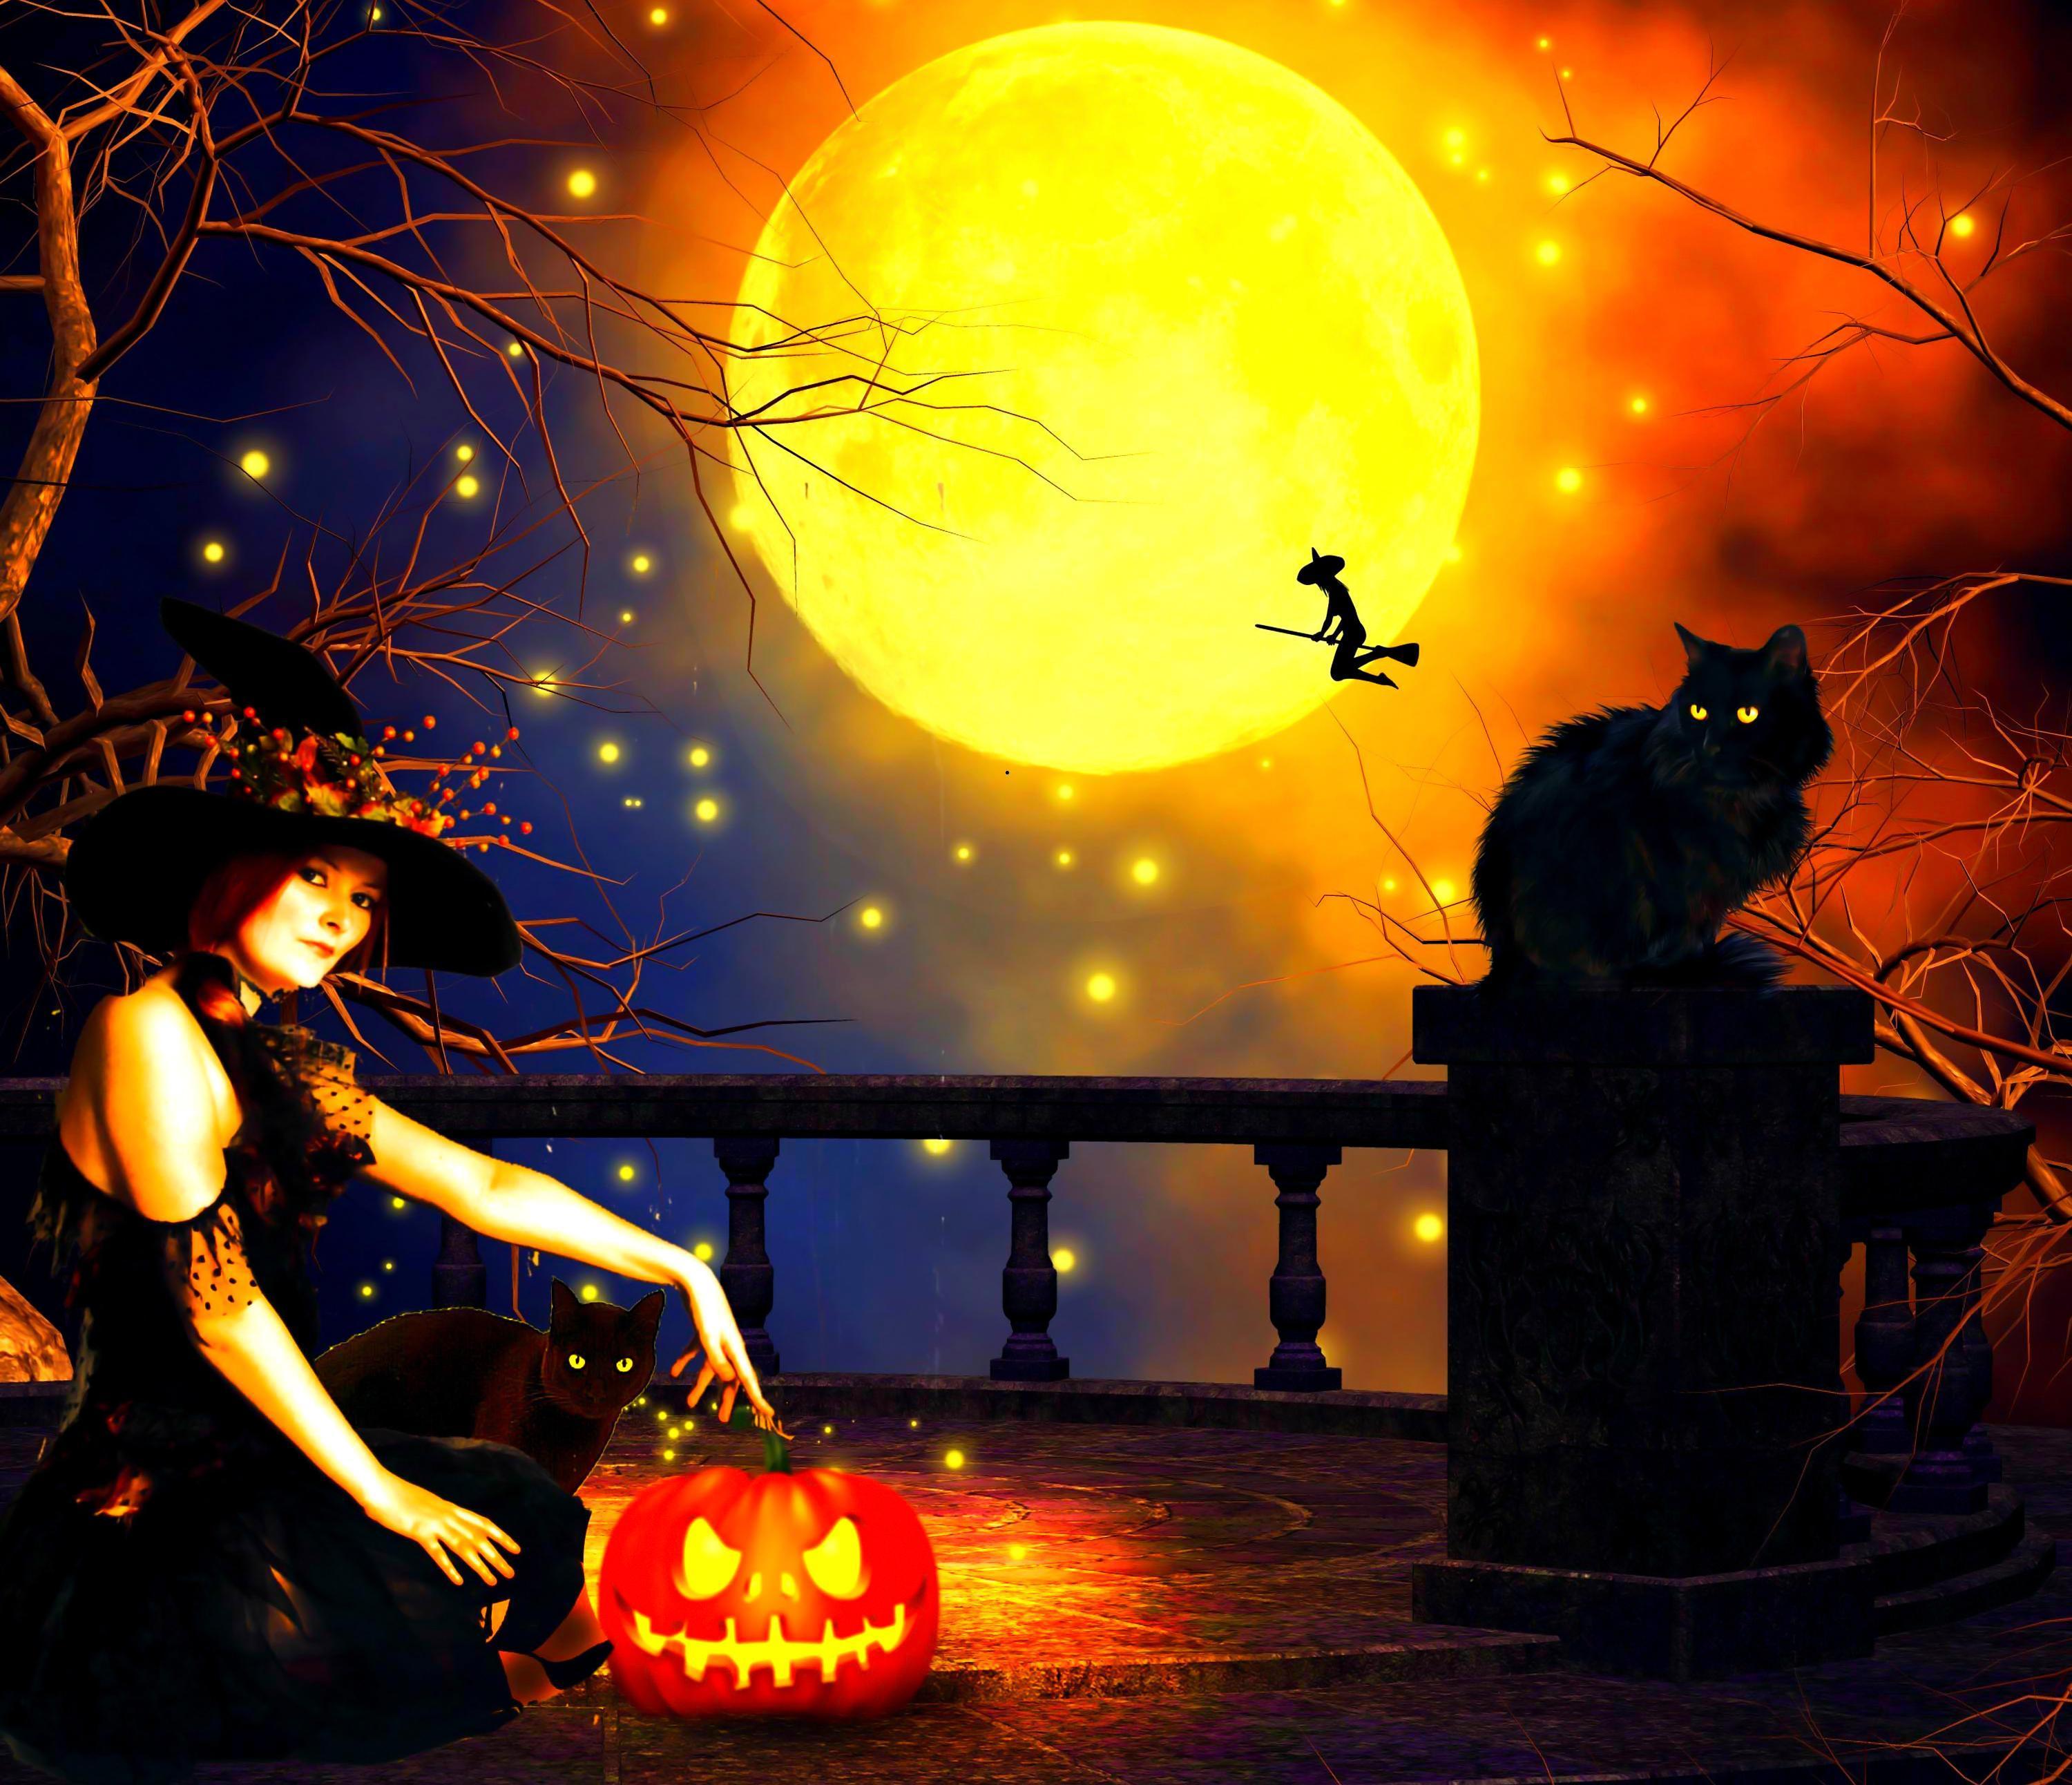 Witches' Night HD desktop wallpaper, Widescreen, High